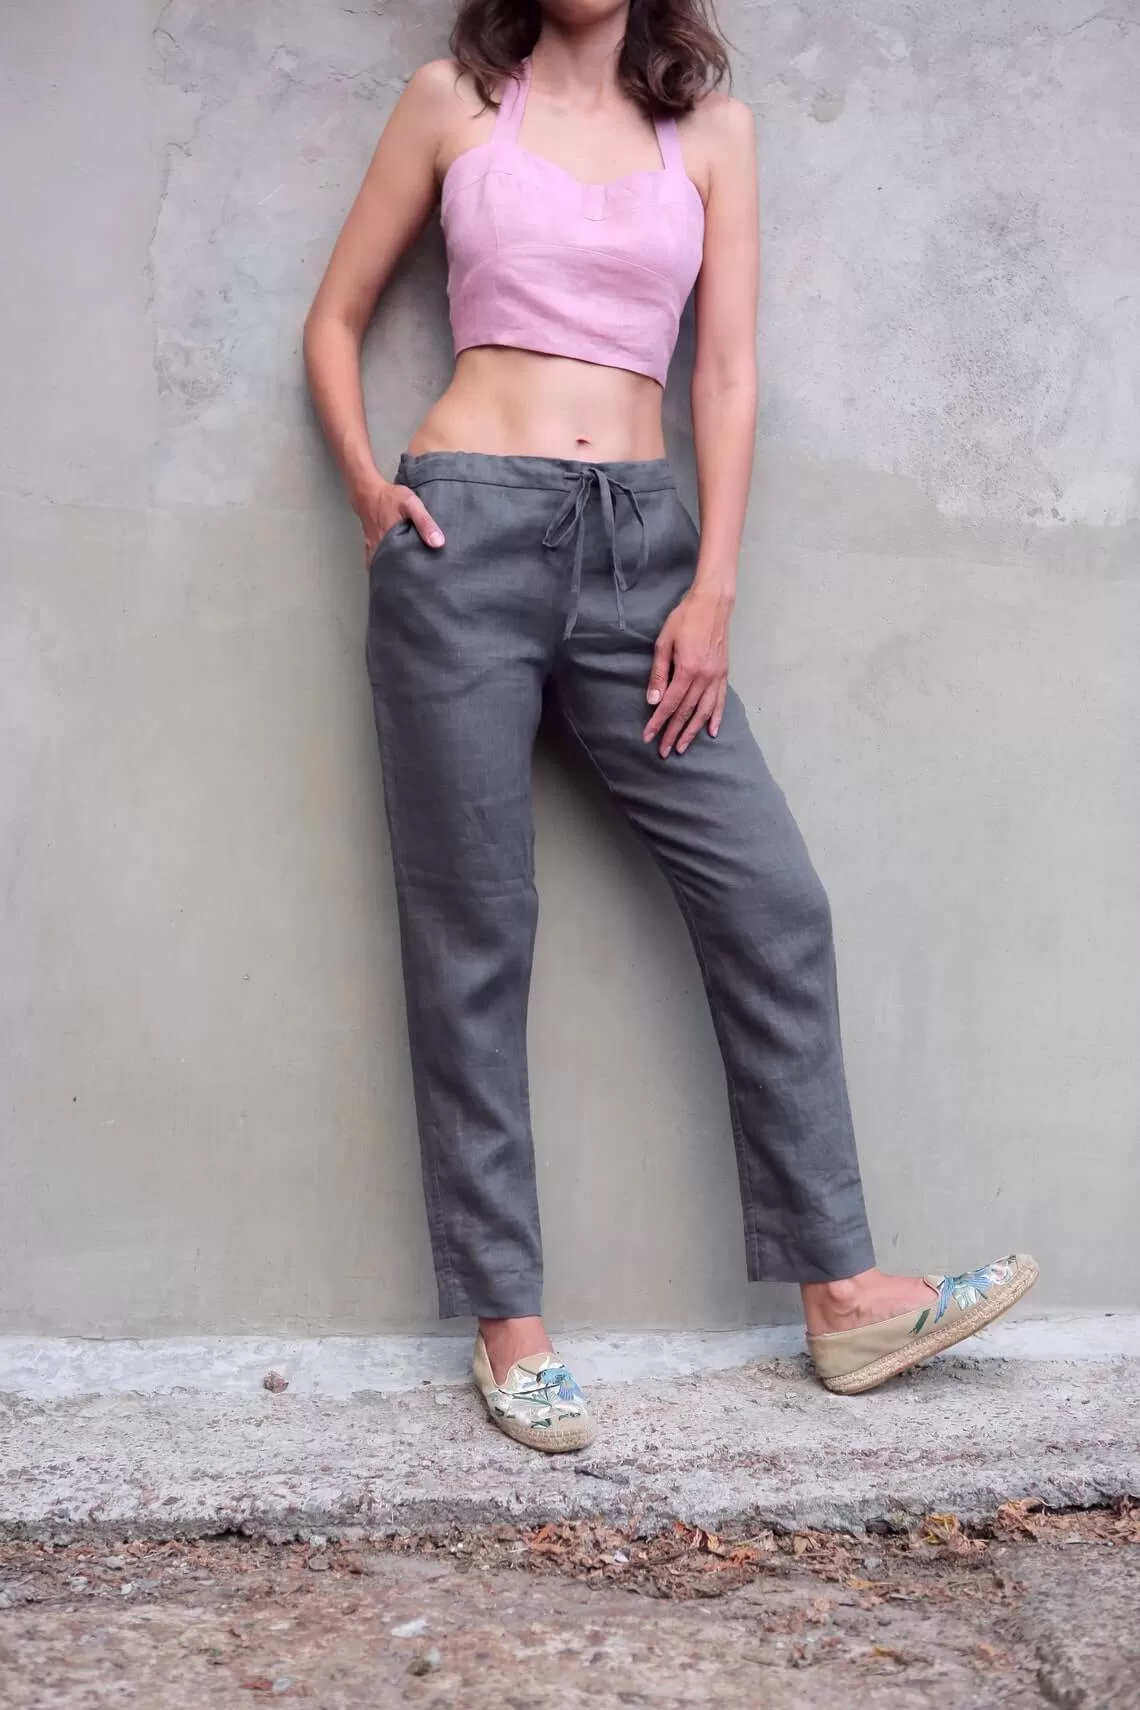 Aspiga Men's Sustainable Linen Full length Relaxed Trousers | Beige